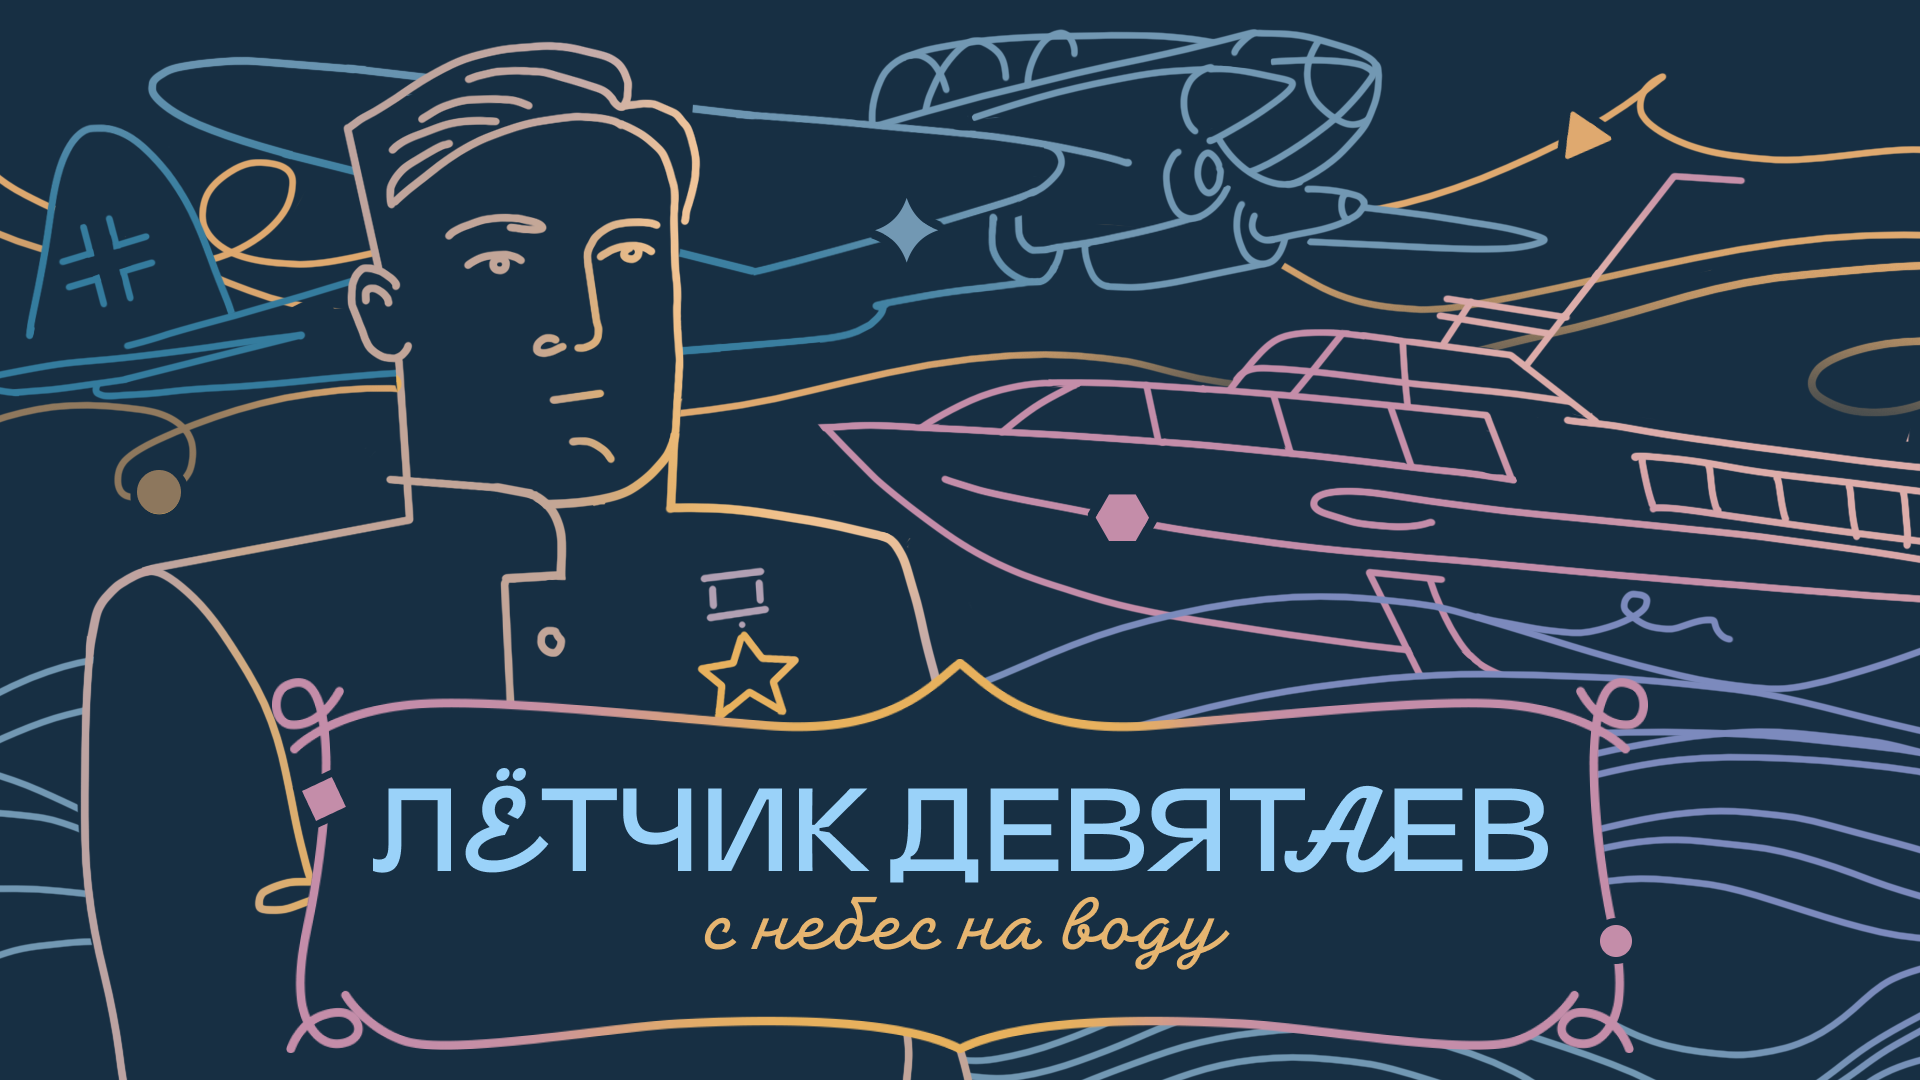 Каштаны, корабли и танцы: лётчик-герой Михаил Девятаев